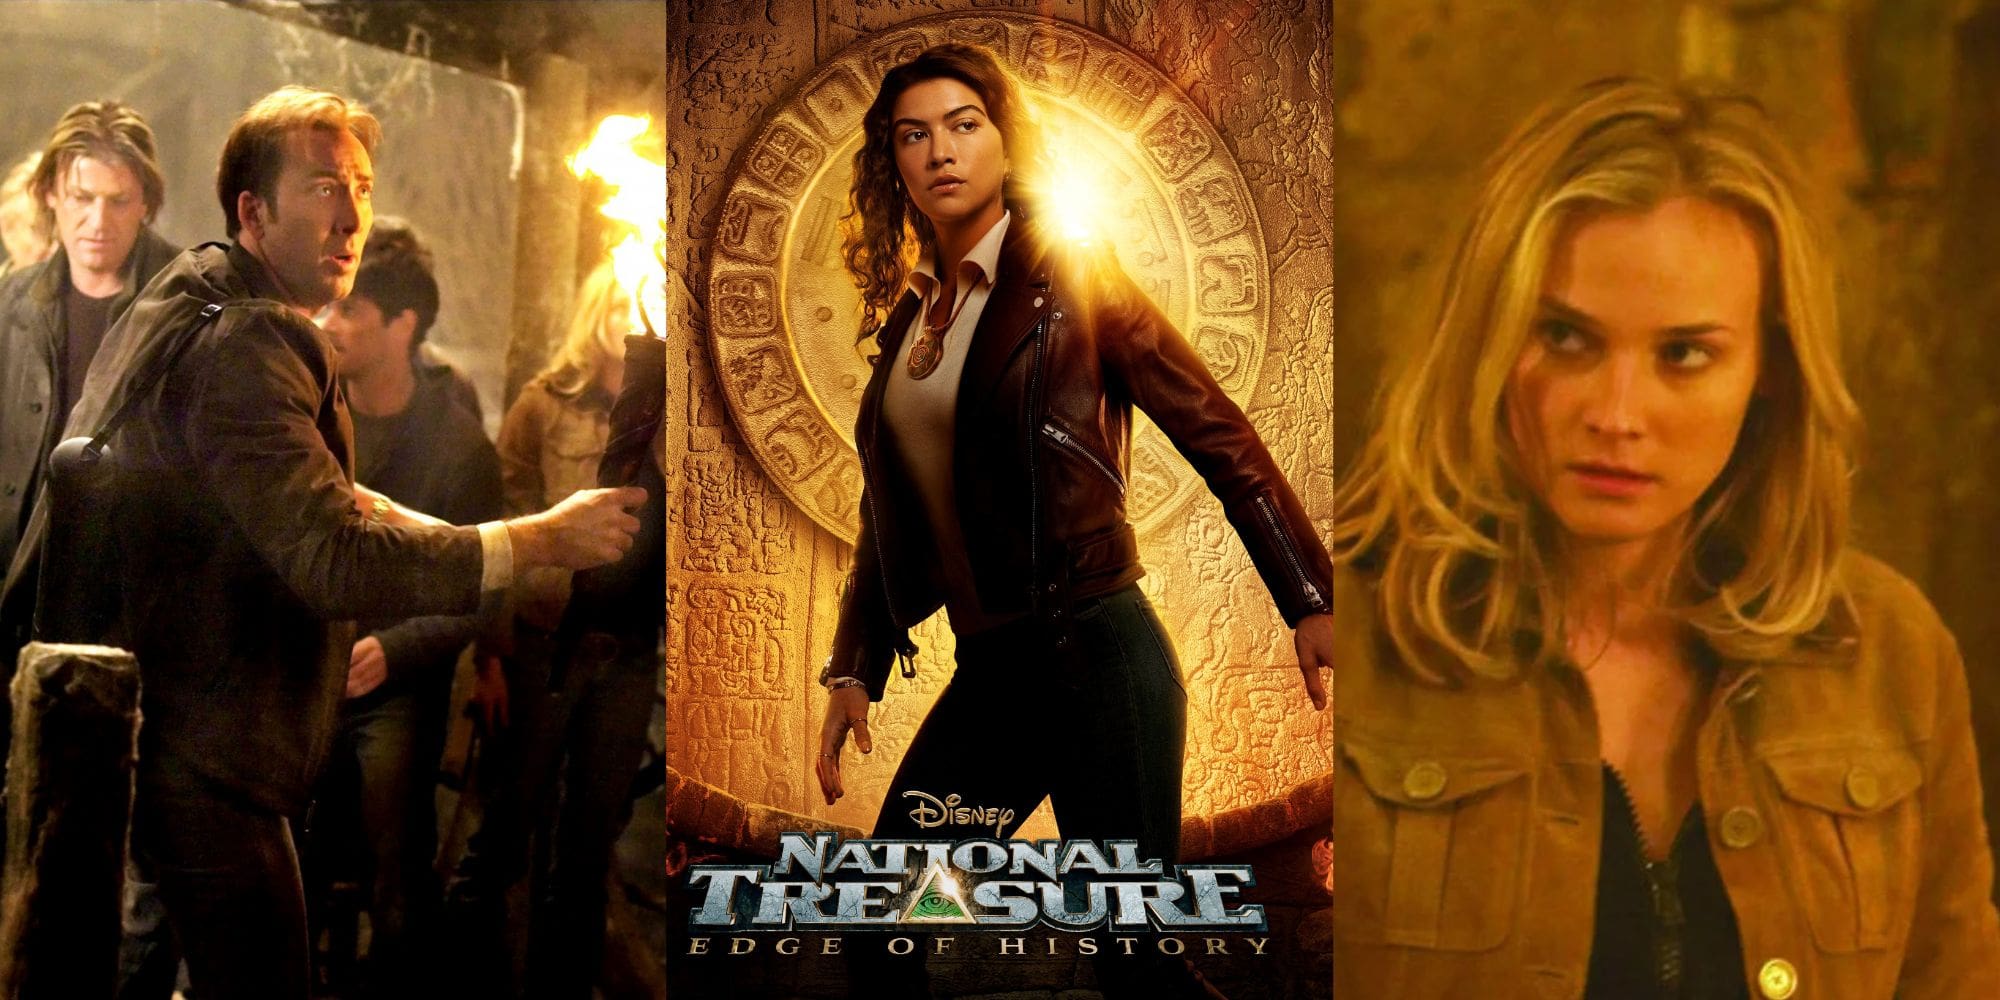 Jon Turteltaub Discusses Potential for National Treasure 3 with Original Cast